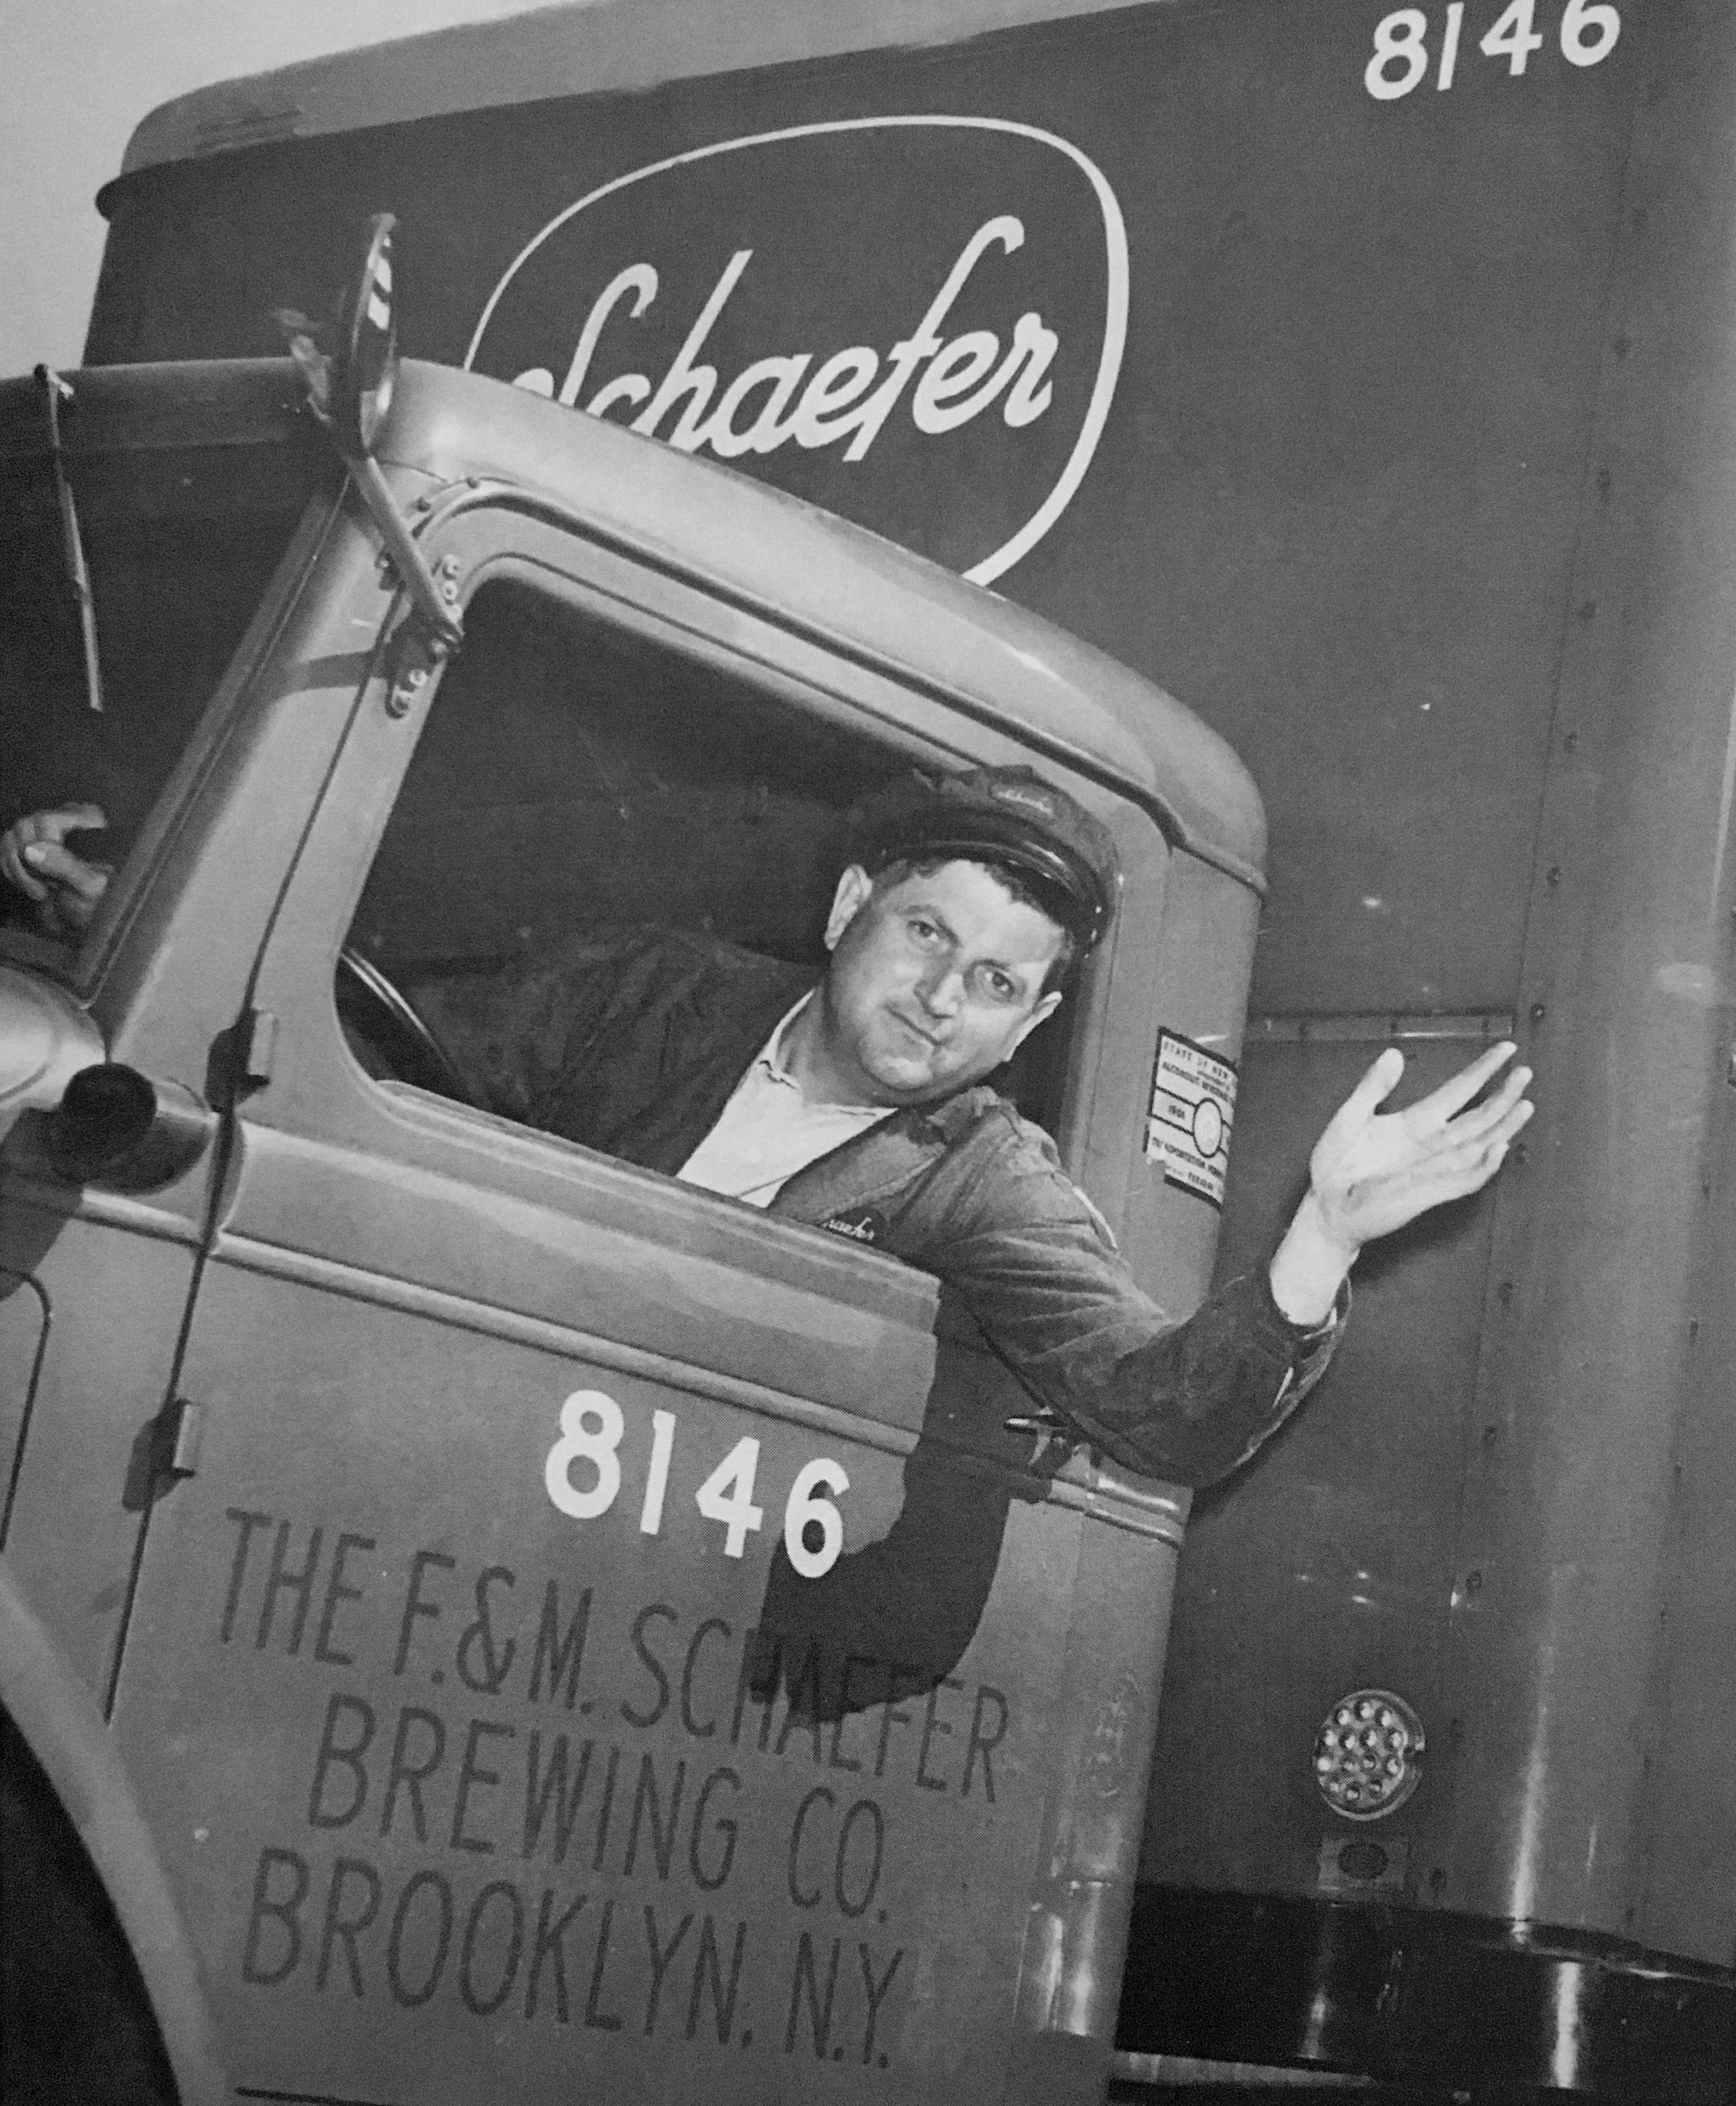 Schaefer driver, after the strike